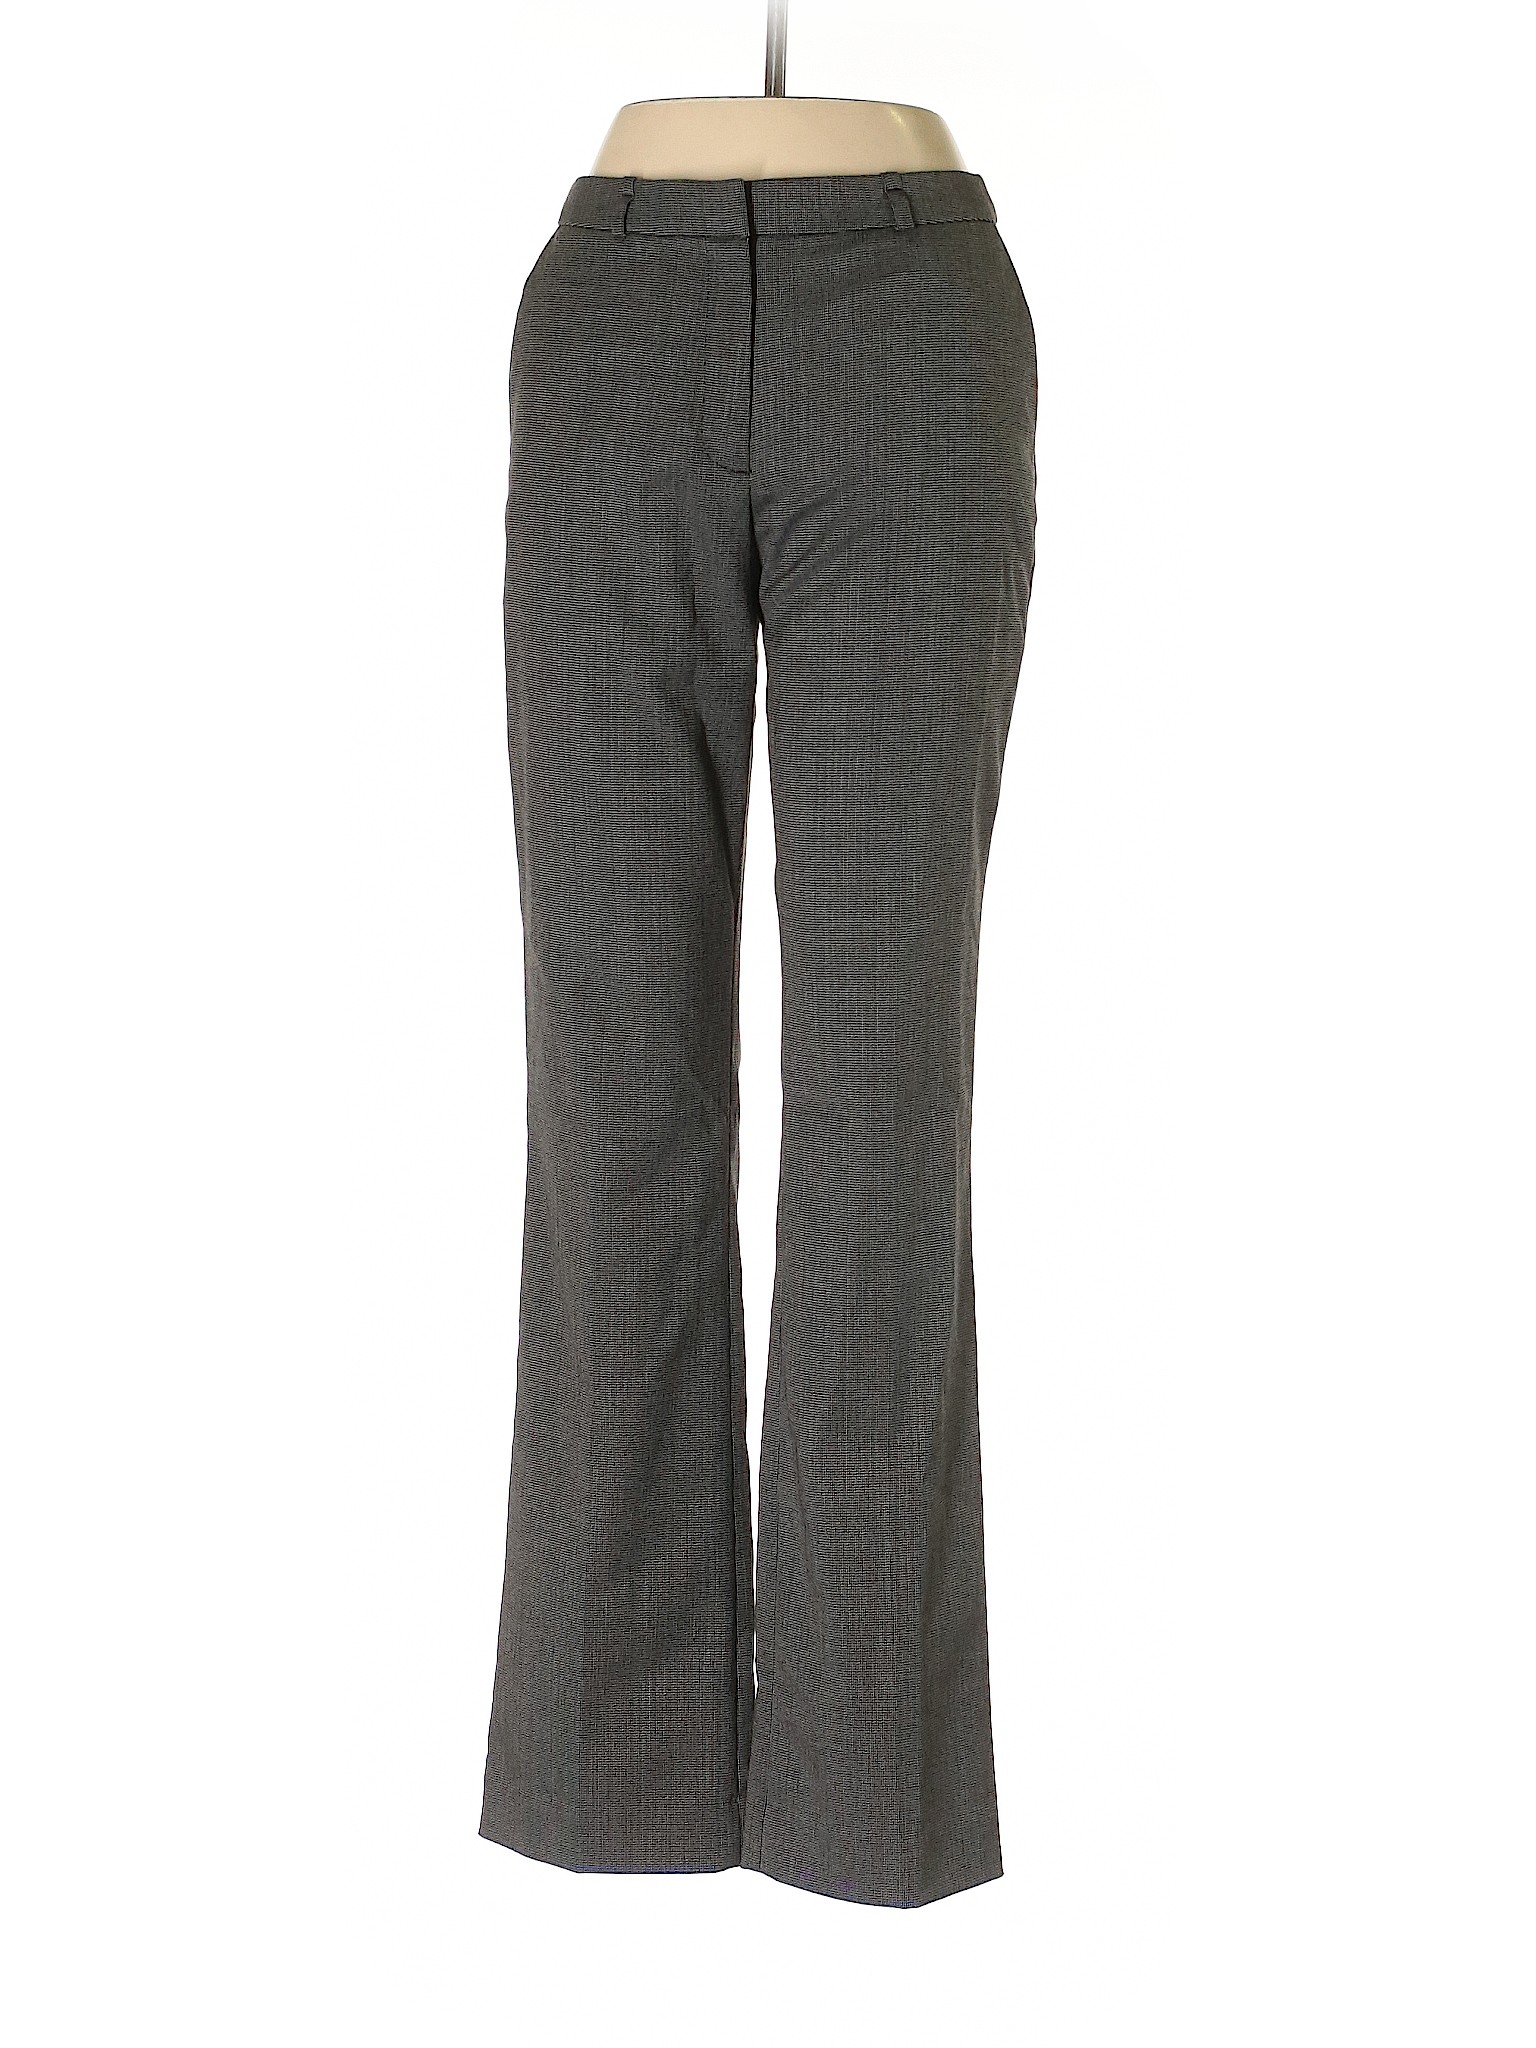 H&M Women Gray Dress Pants 4 | eBay